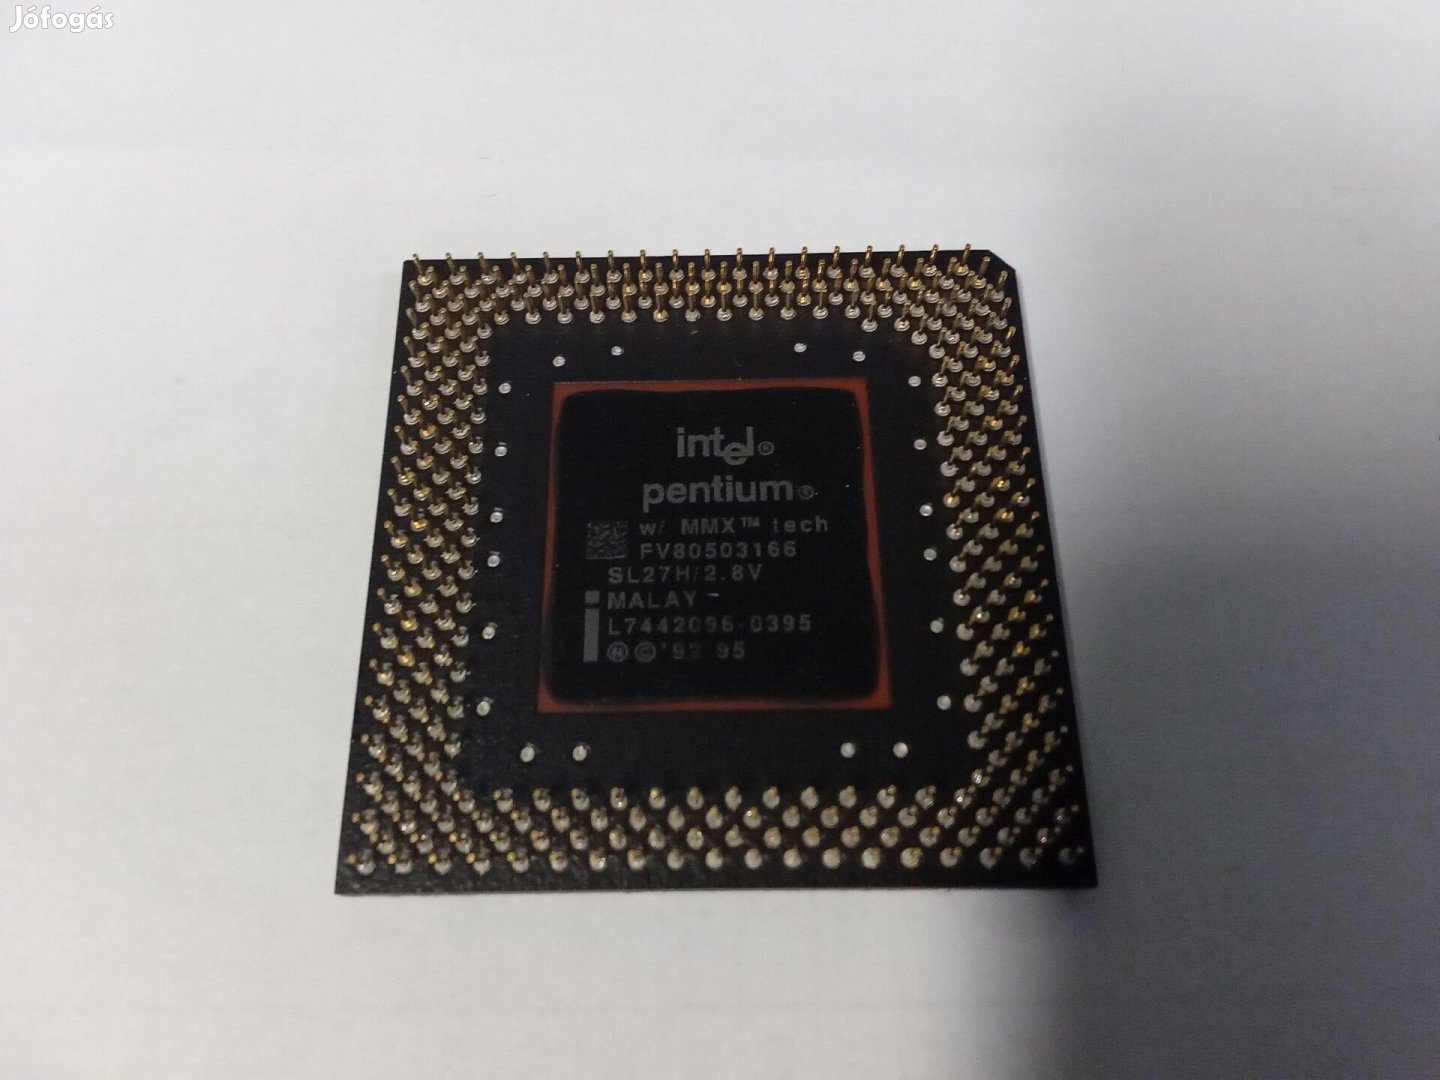 Intel Pentium MMX 166 CPU